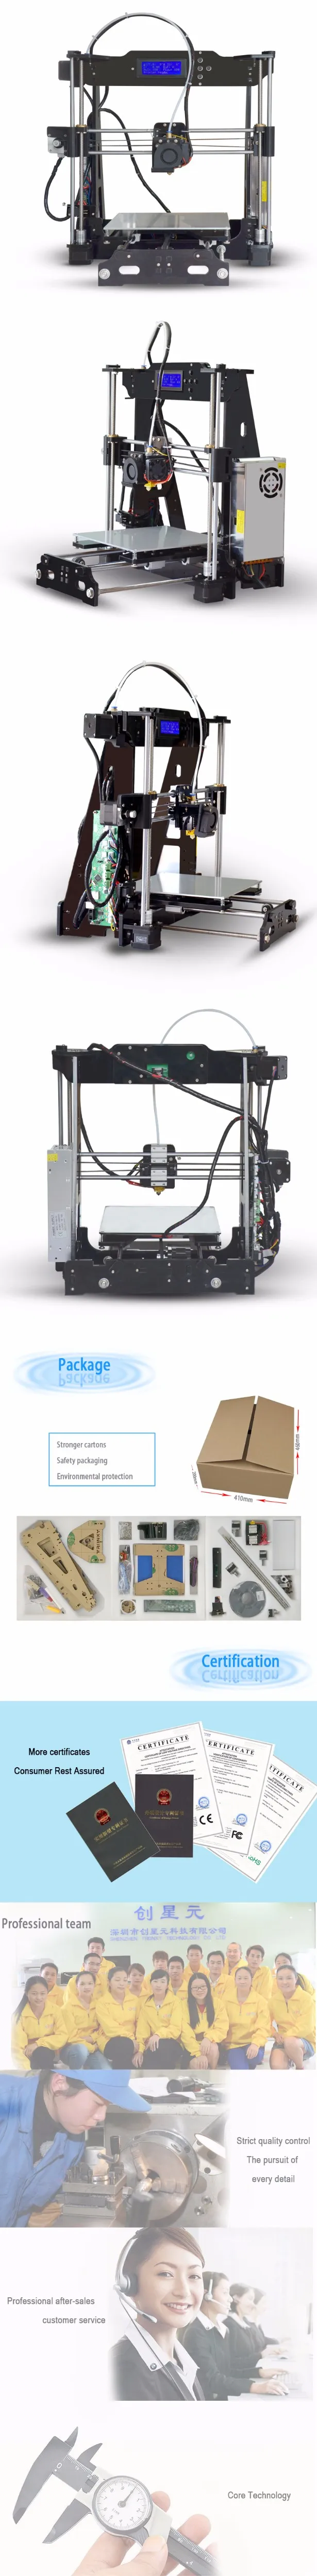 Горячая Tronxy P802E 3d принтер DIY наборы Боуден экструдер MK3 heatbed 3D печать PLA ABS поддерживает автоматическое выравнивание дополнительно 8 Гб SD